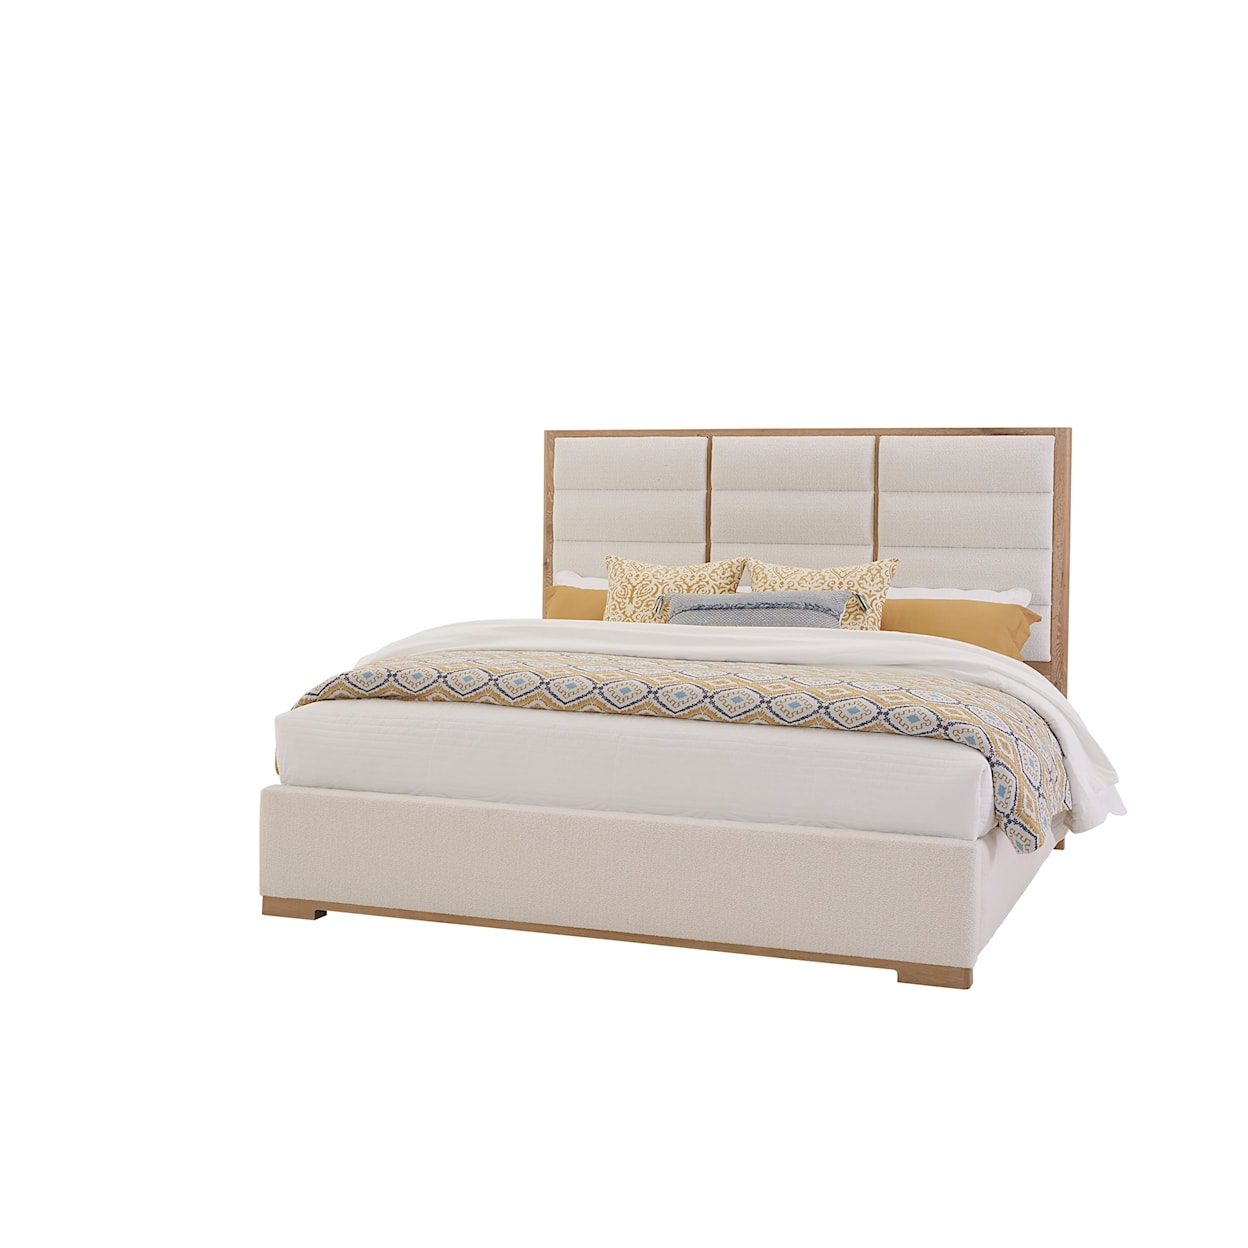 Vaughan-Bassett Charter Oak Upholstered King Panel Bed